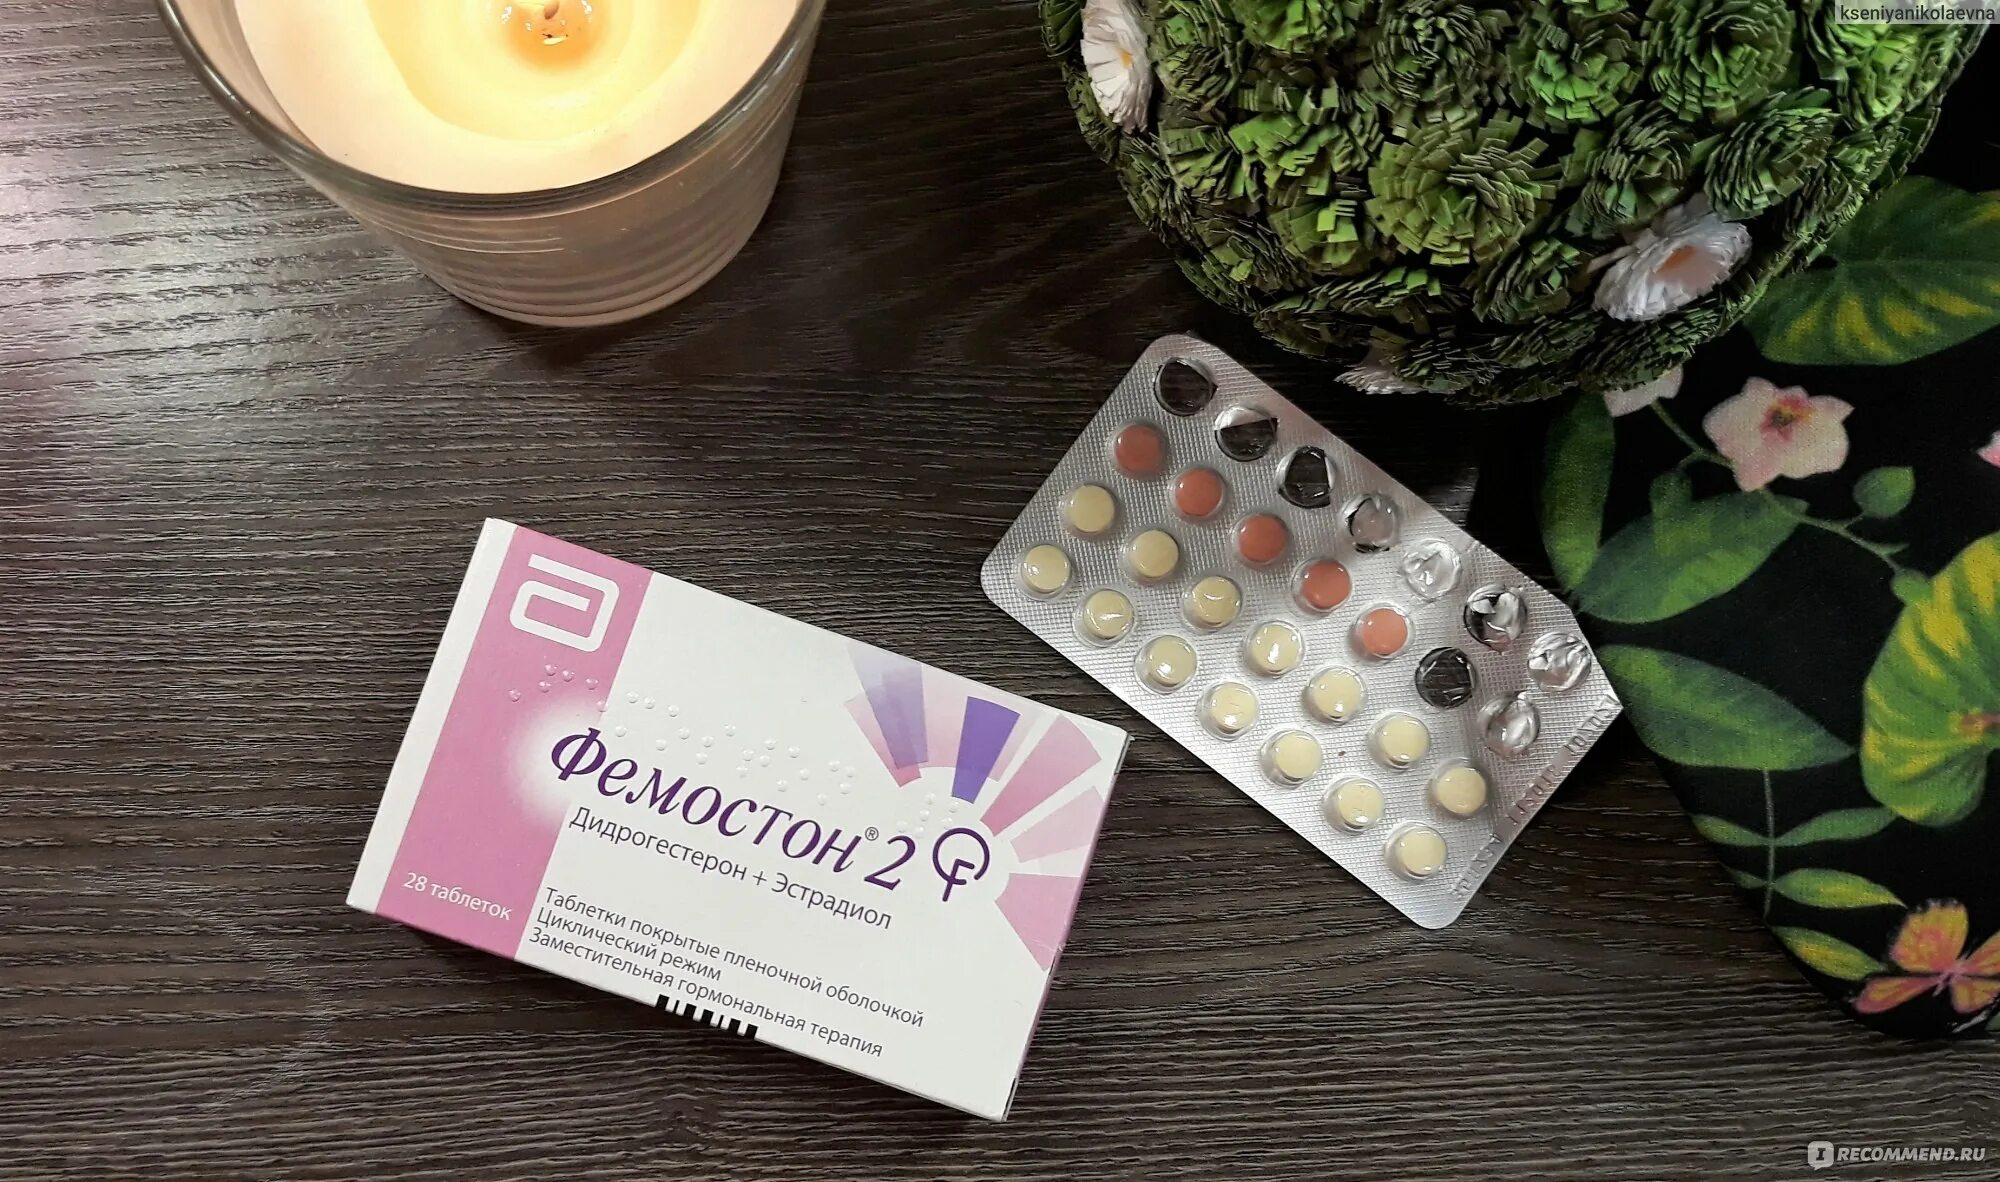 Фемостон 2 таблетки. Гормональные таблетки фемостон 2/10. Фемостон контрацепция. Гормональный препарат для женщин фемостон.